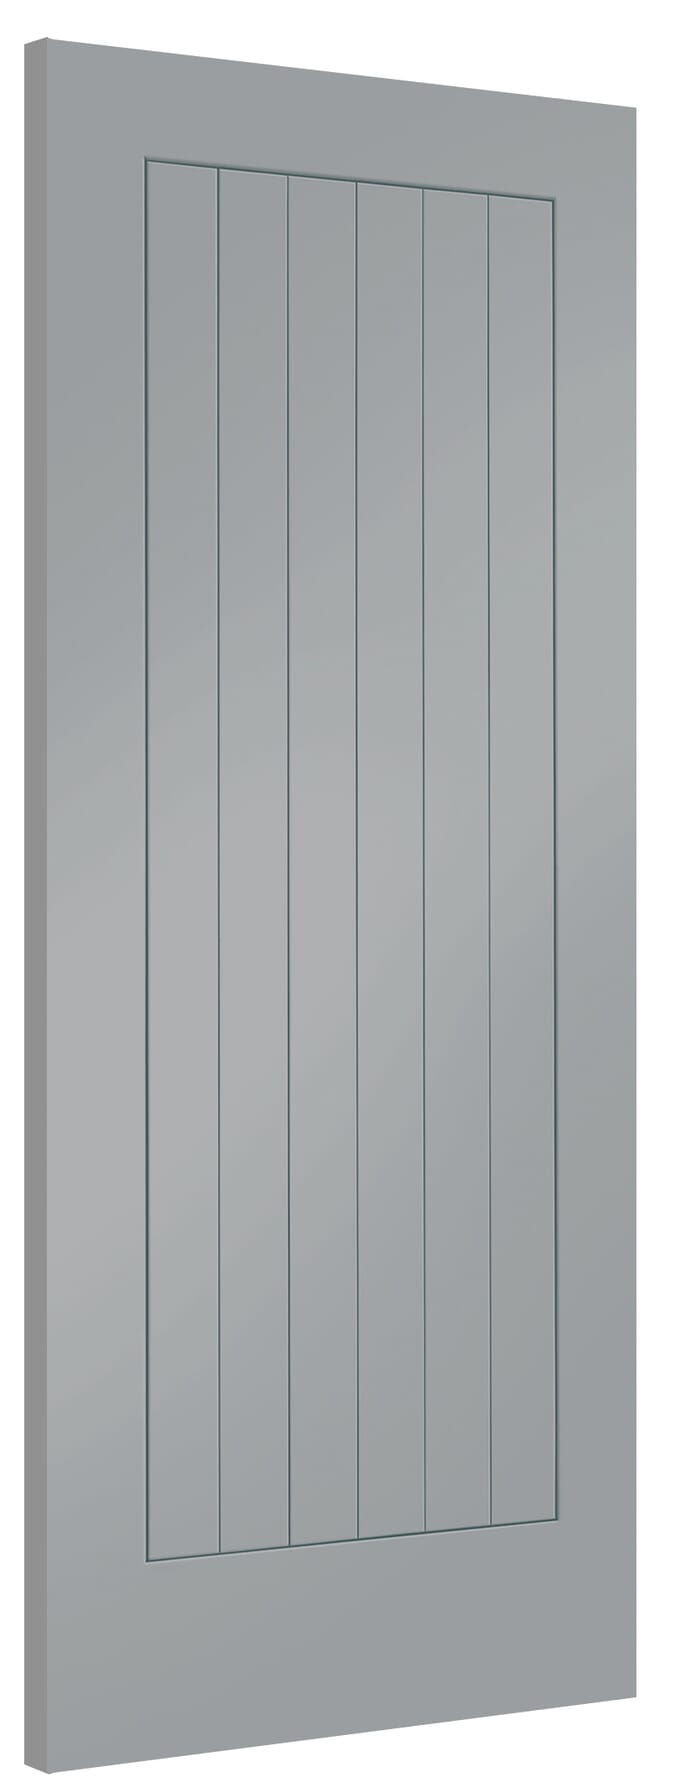 686x1981x44mm (27") Suffolk Storm Grey Internal Doors